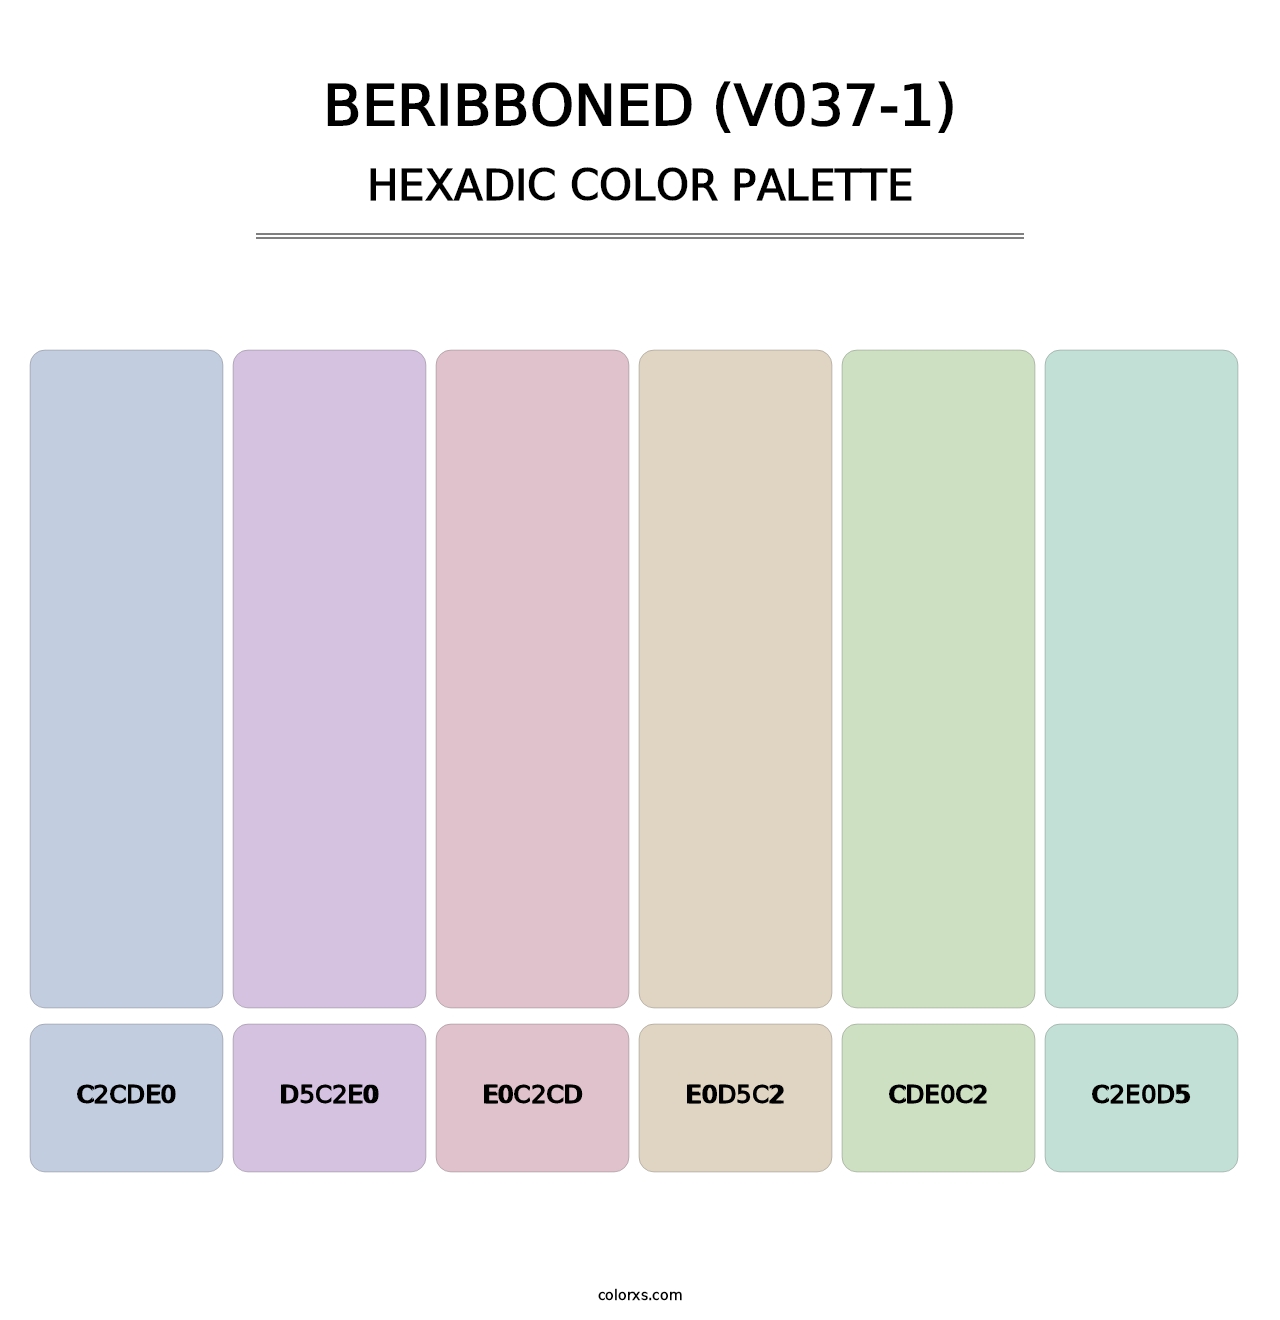 Beribboned (V037-1) - Hexadic Color Palette